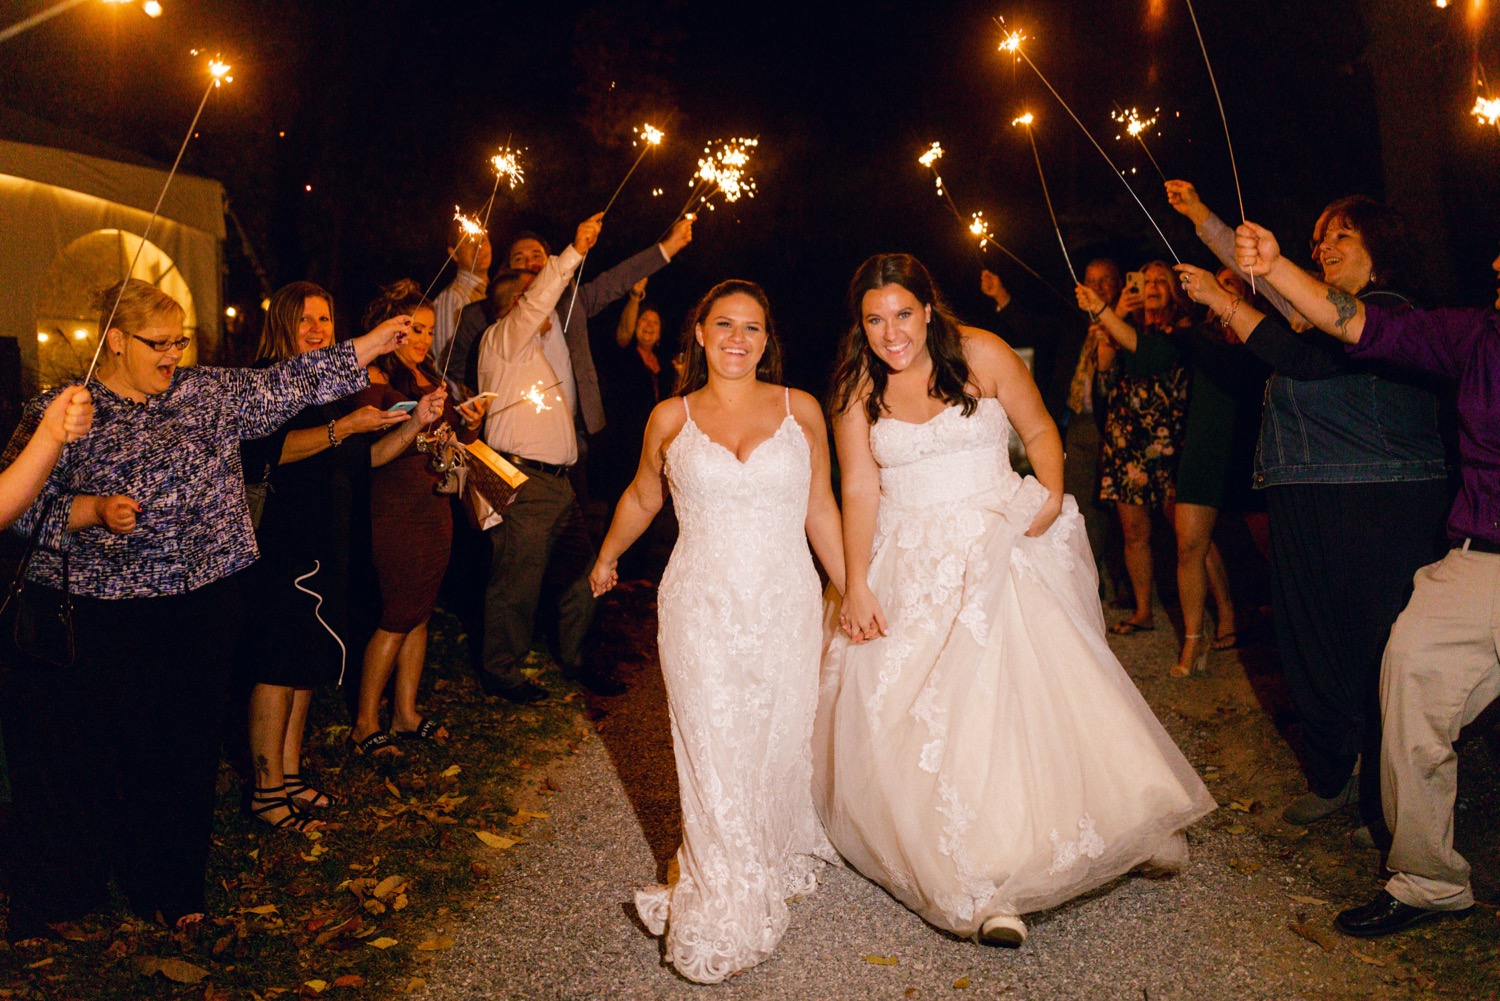 sparkler arch send off wedding brides